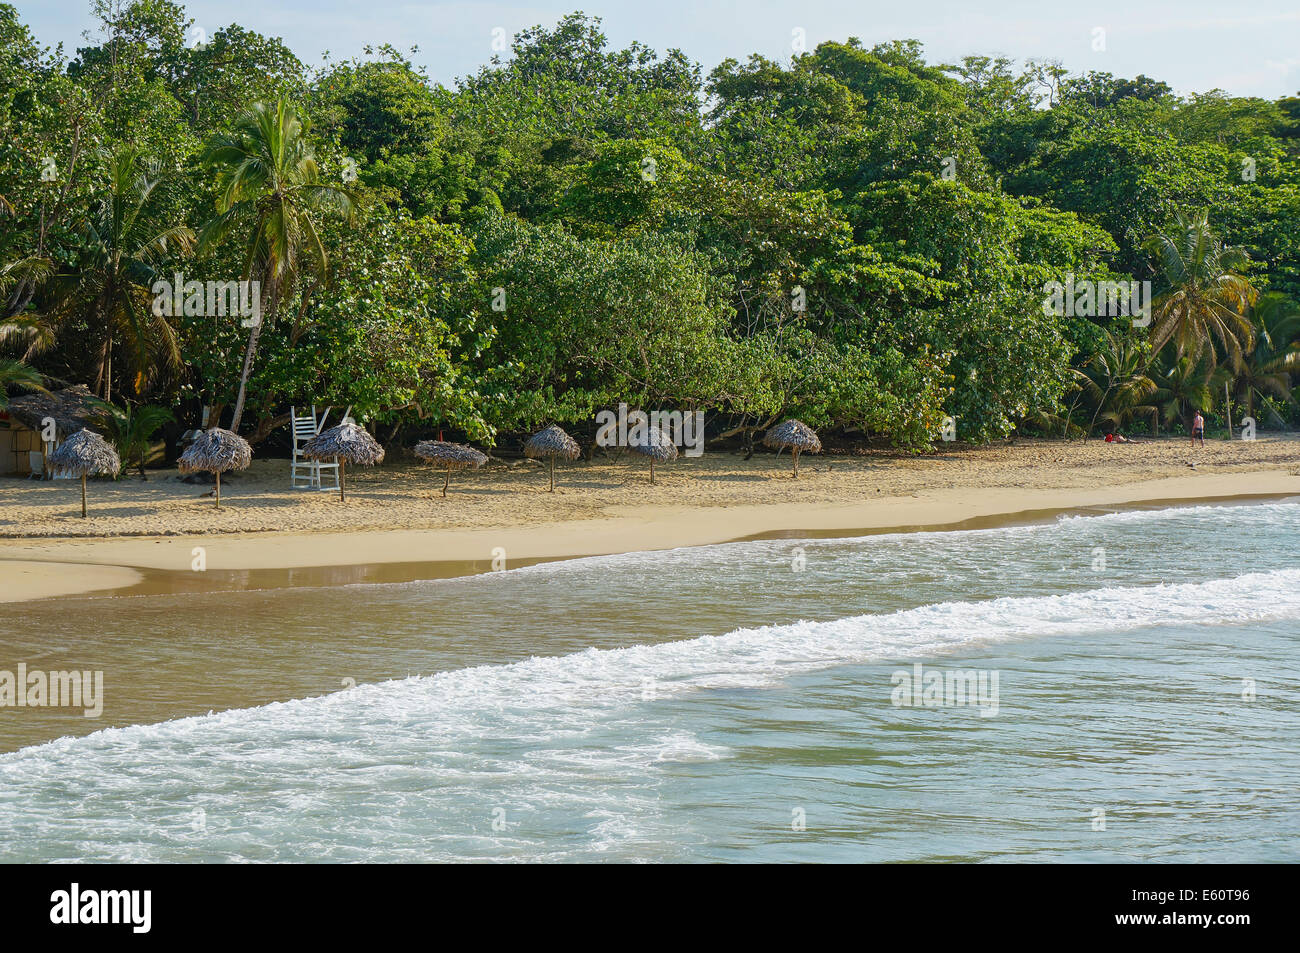 La feuille de palmier thatch parasols sur une plage de sable fin avec une végétation tropicale, mer des Caraïbes Banque D'Images